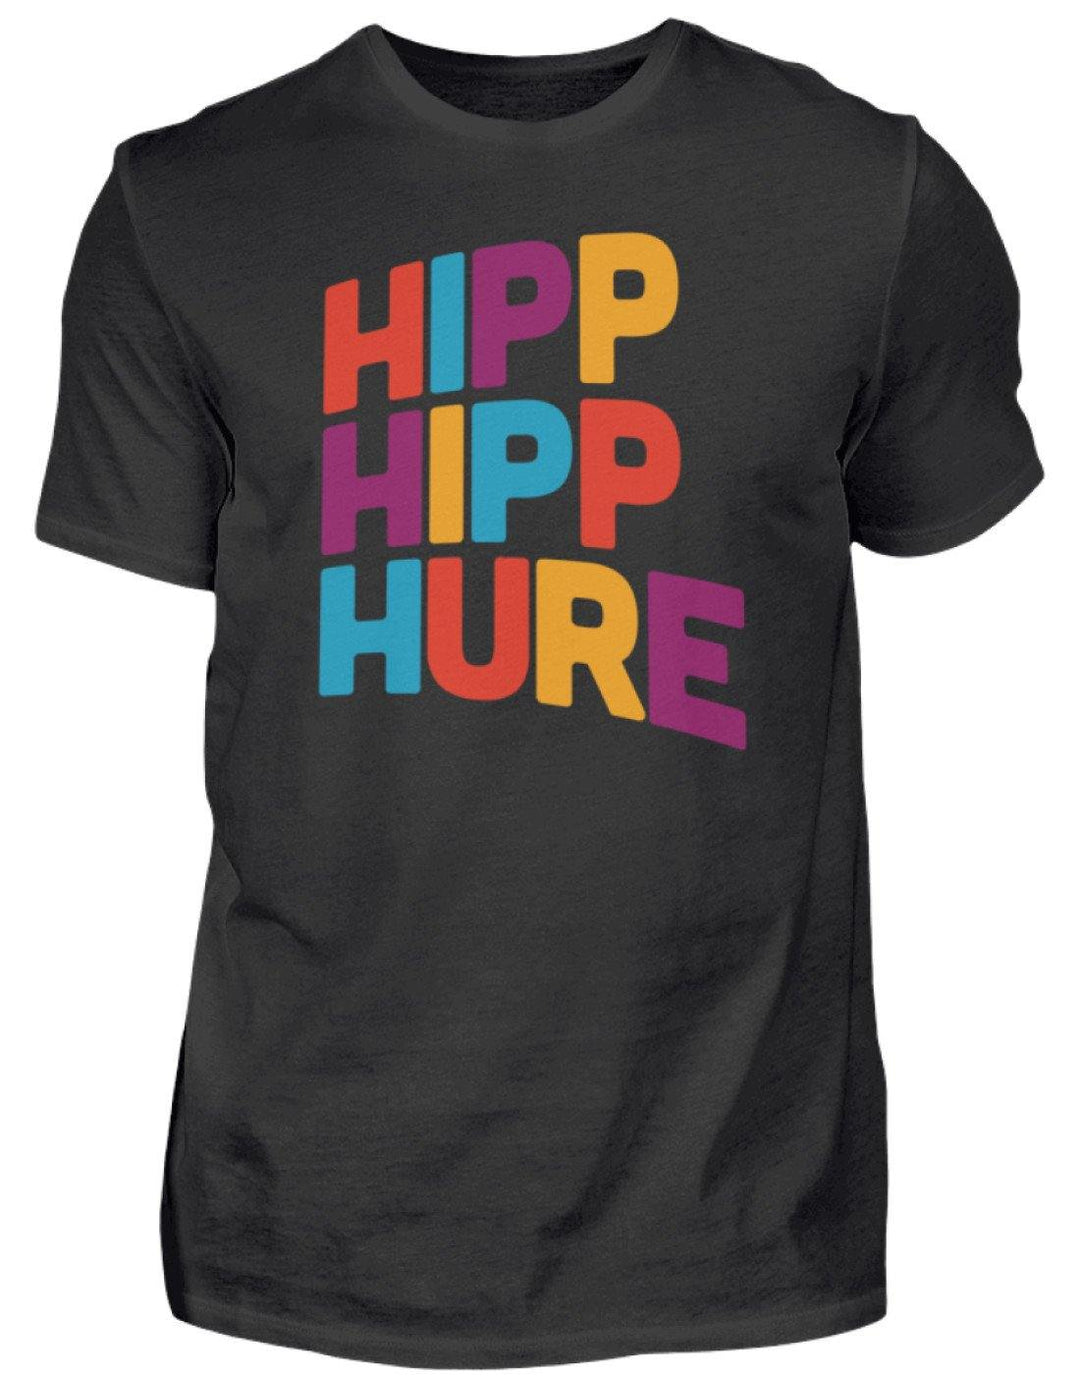 HIPP HIPP HURE- WORDS ON SHIRTS  - Herren Shirt - Words on Shirts Sag es mit dem Mittelfinger Shirts Hoodies Sweatshirt Taschen Gymsack Spruch Sprüche Statement